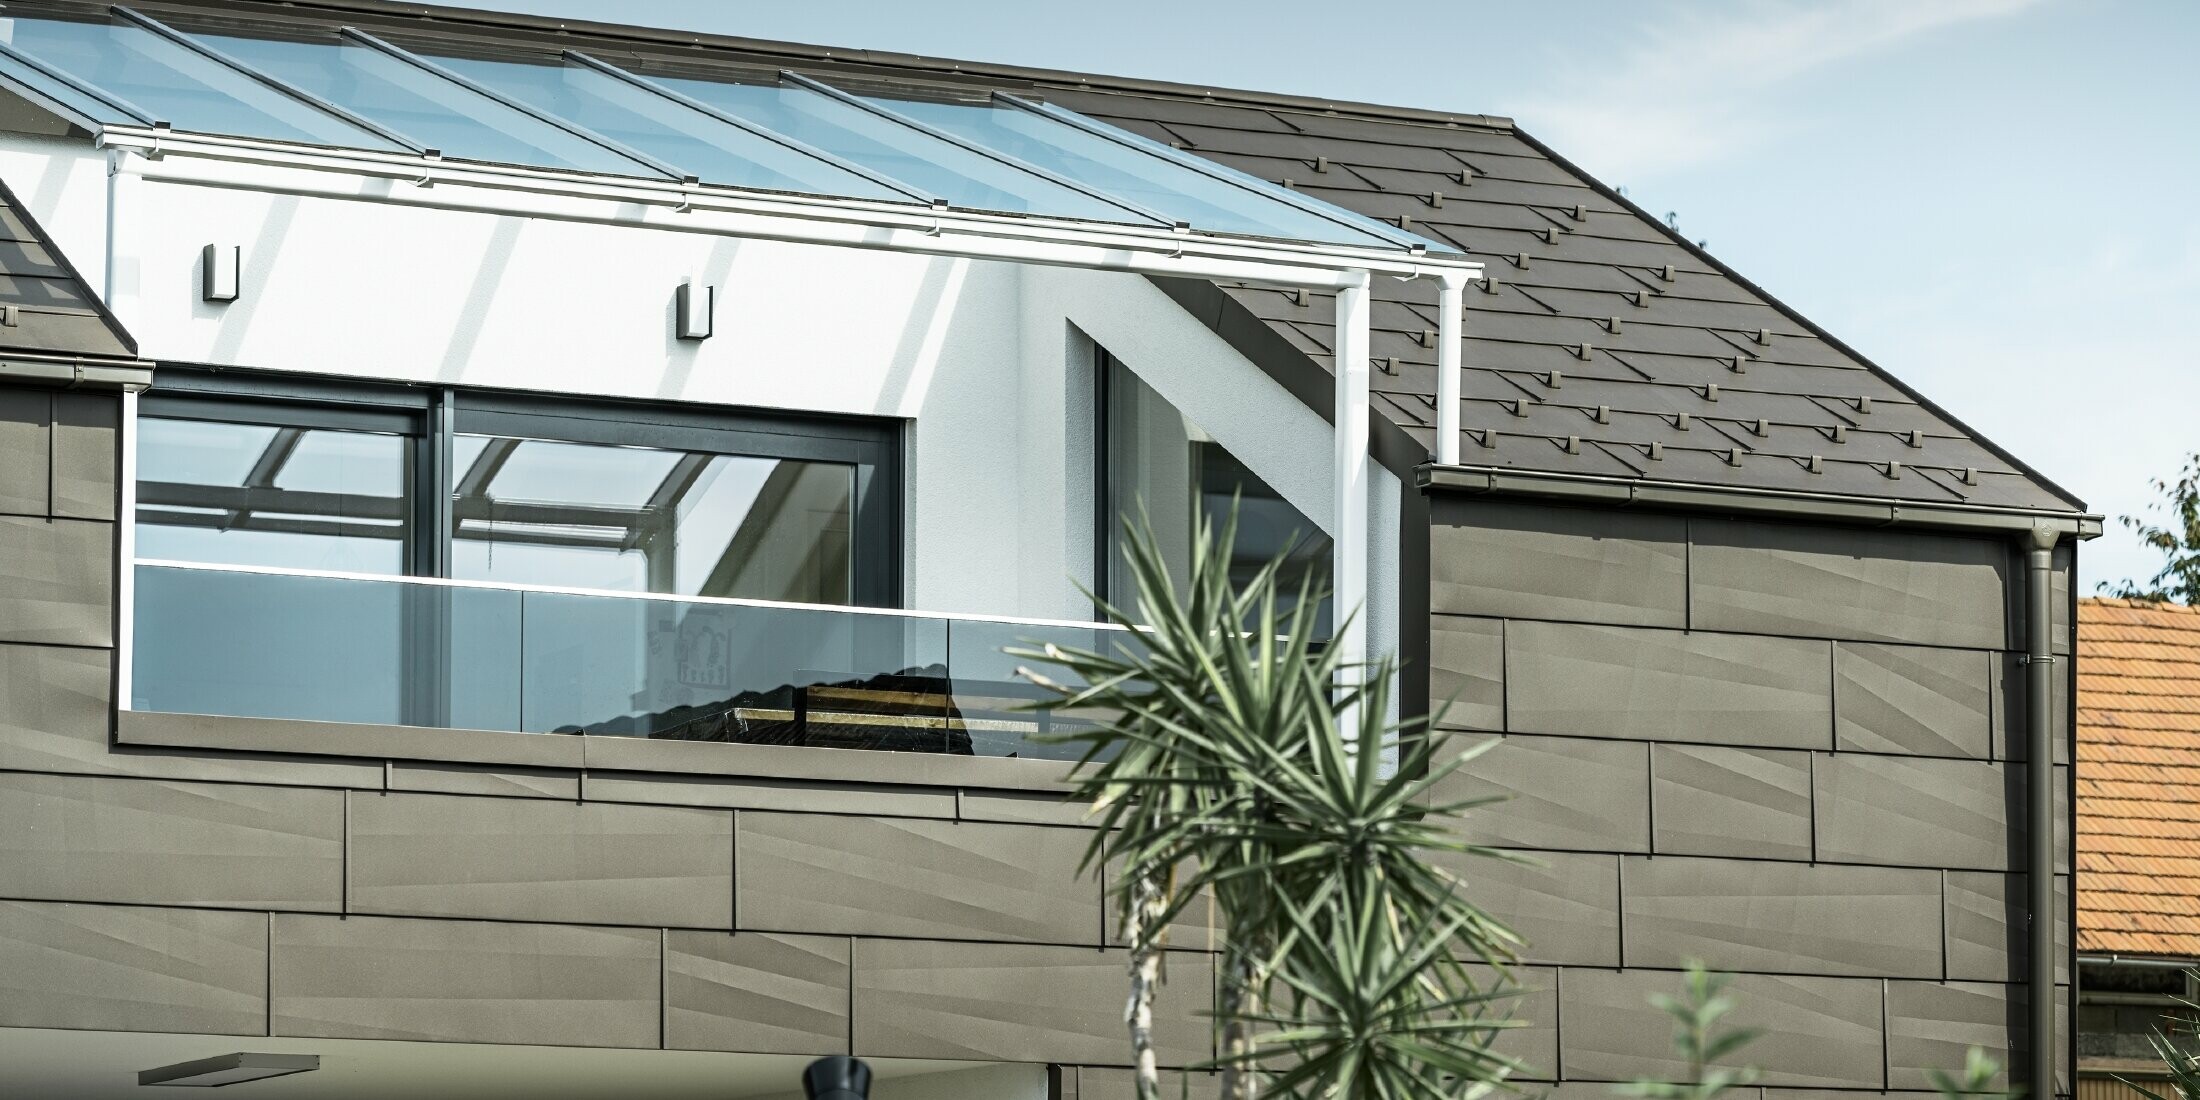 Bővítés PREFA komplett rendszerrel burkolt tetőterasszal, FX.12 PREFA tető- és homlokzatpanellel a tetőn és a homlokzaton. Ezenkívül a PREFA négyszögszelvényű ereszcsatorna PREFA lefolyócsővel és barna színű, gazdag tartozékokkal a tető-vízelvezetéshez.